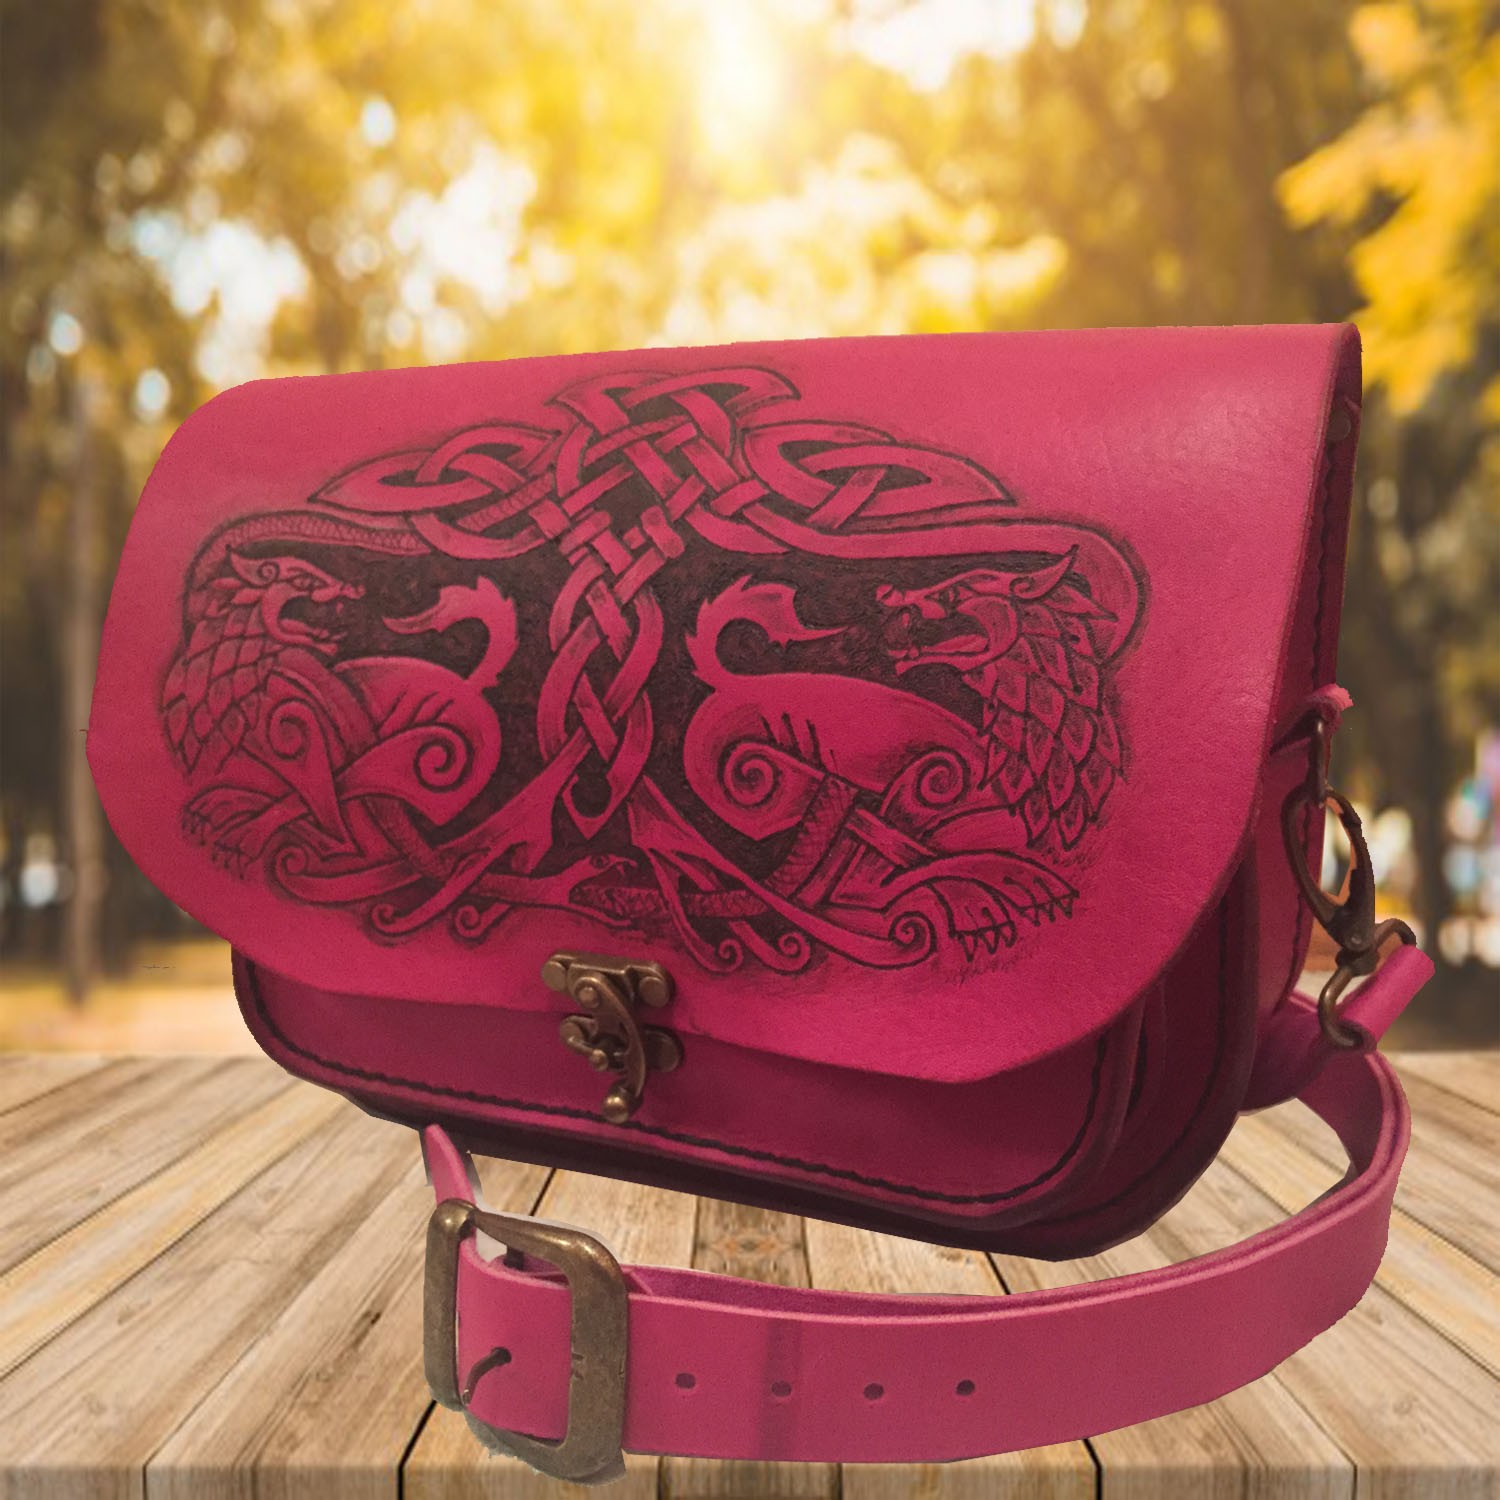 Handmade Pink Leather Satchel Bag - Celtic Wolves